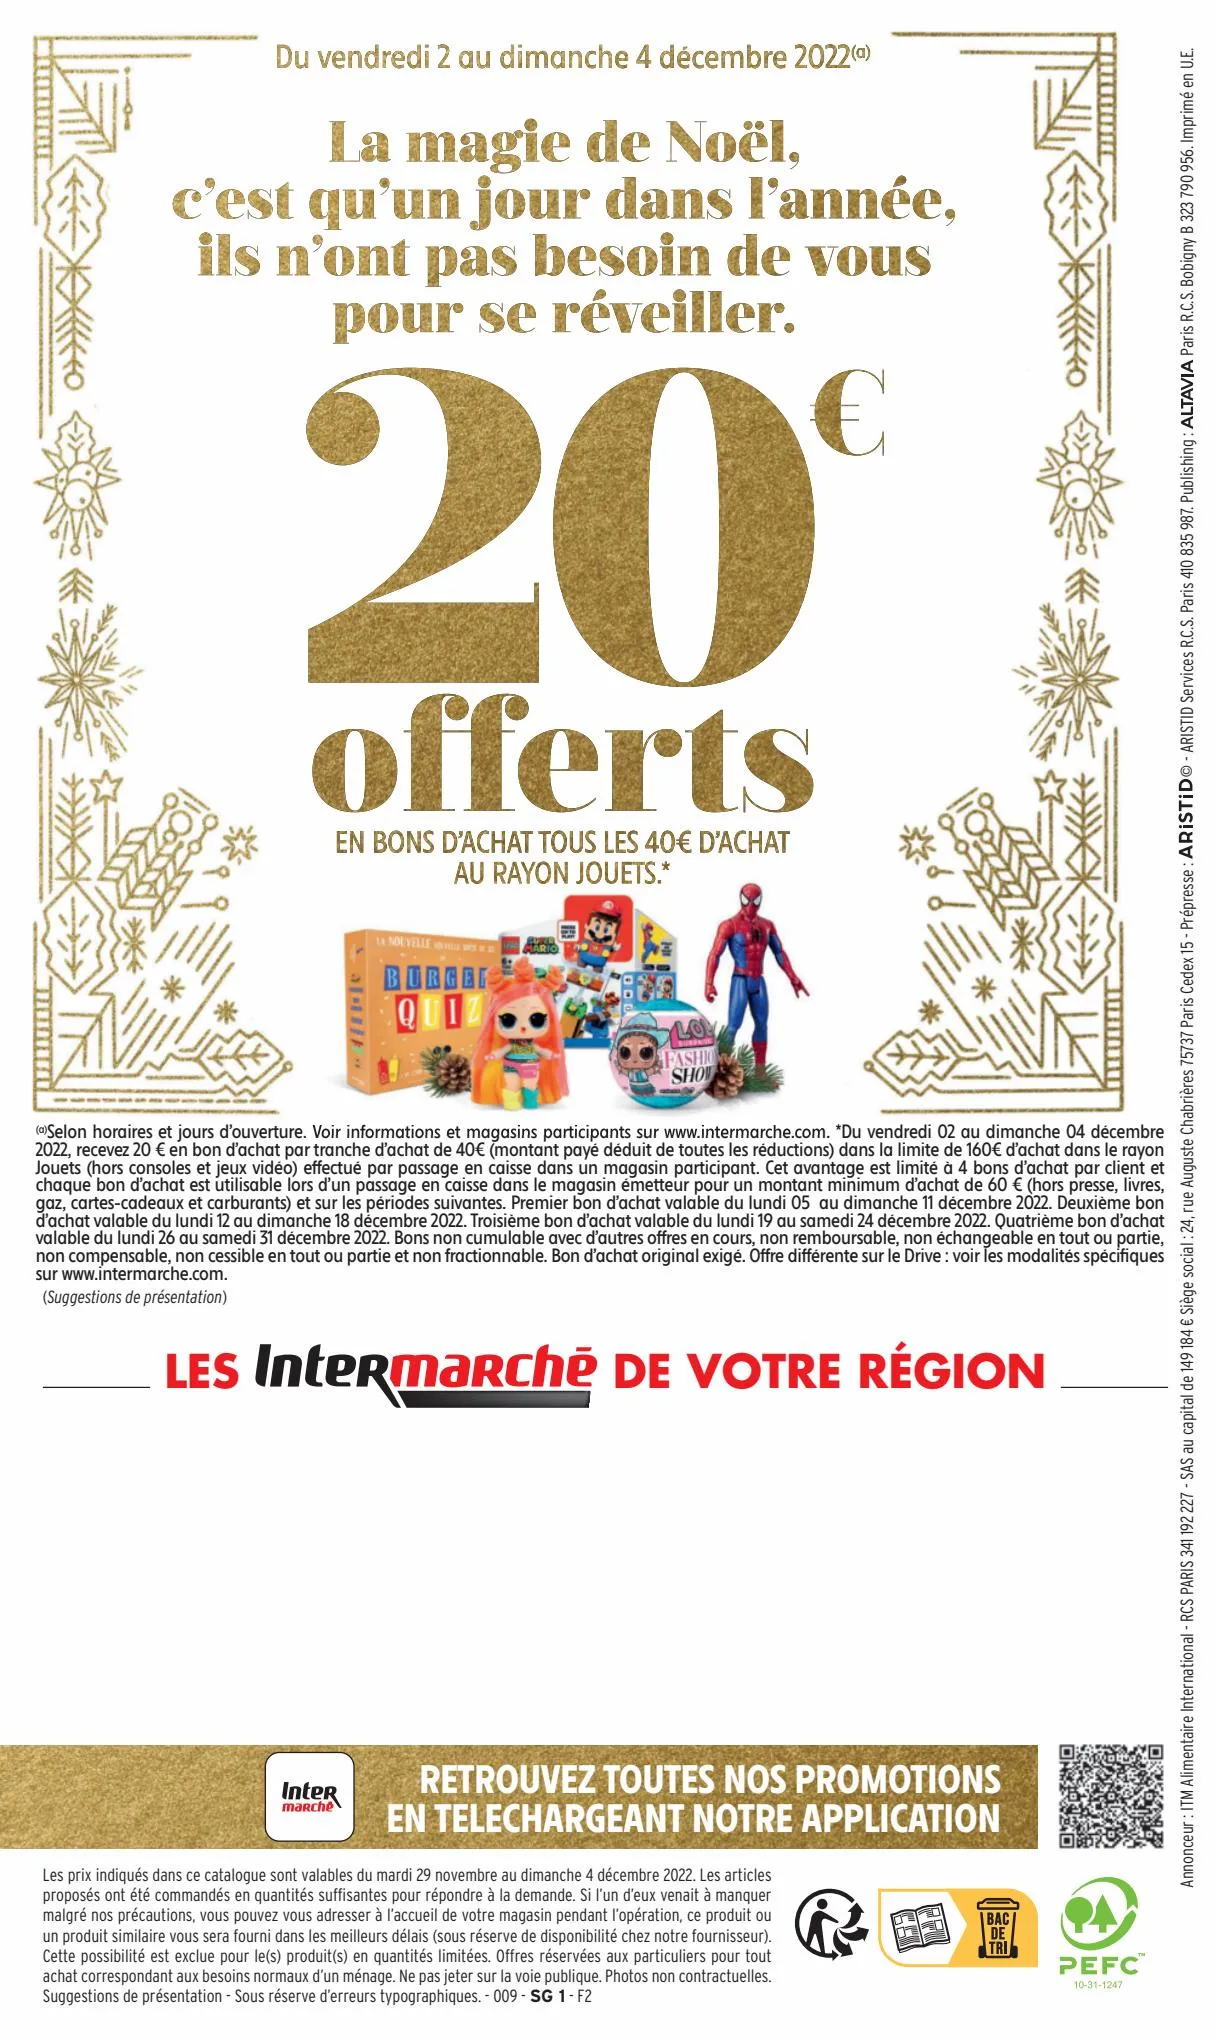 Catalogue 130€ offerts en bons d'achat, page 00044